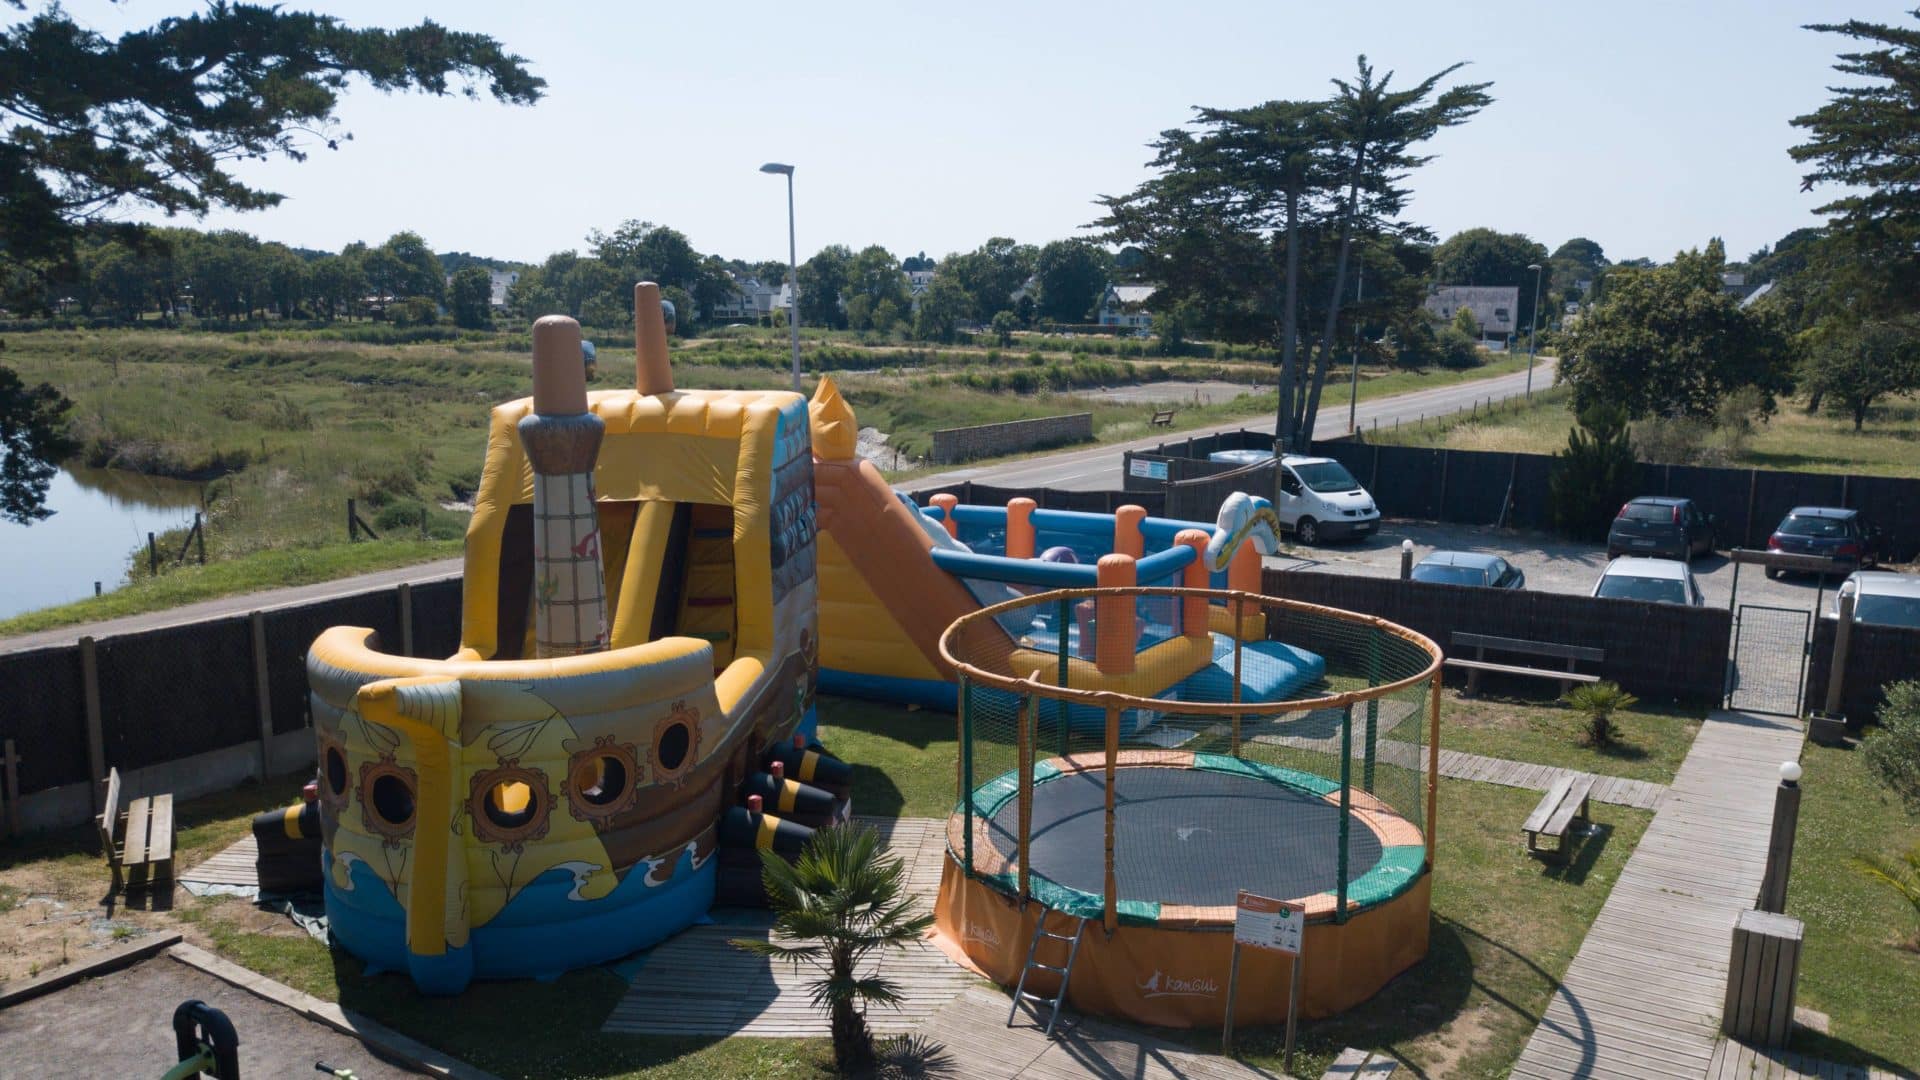 Children's playground at Au Soir Été campsite in Mesquer, Loire-Atlantique